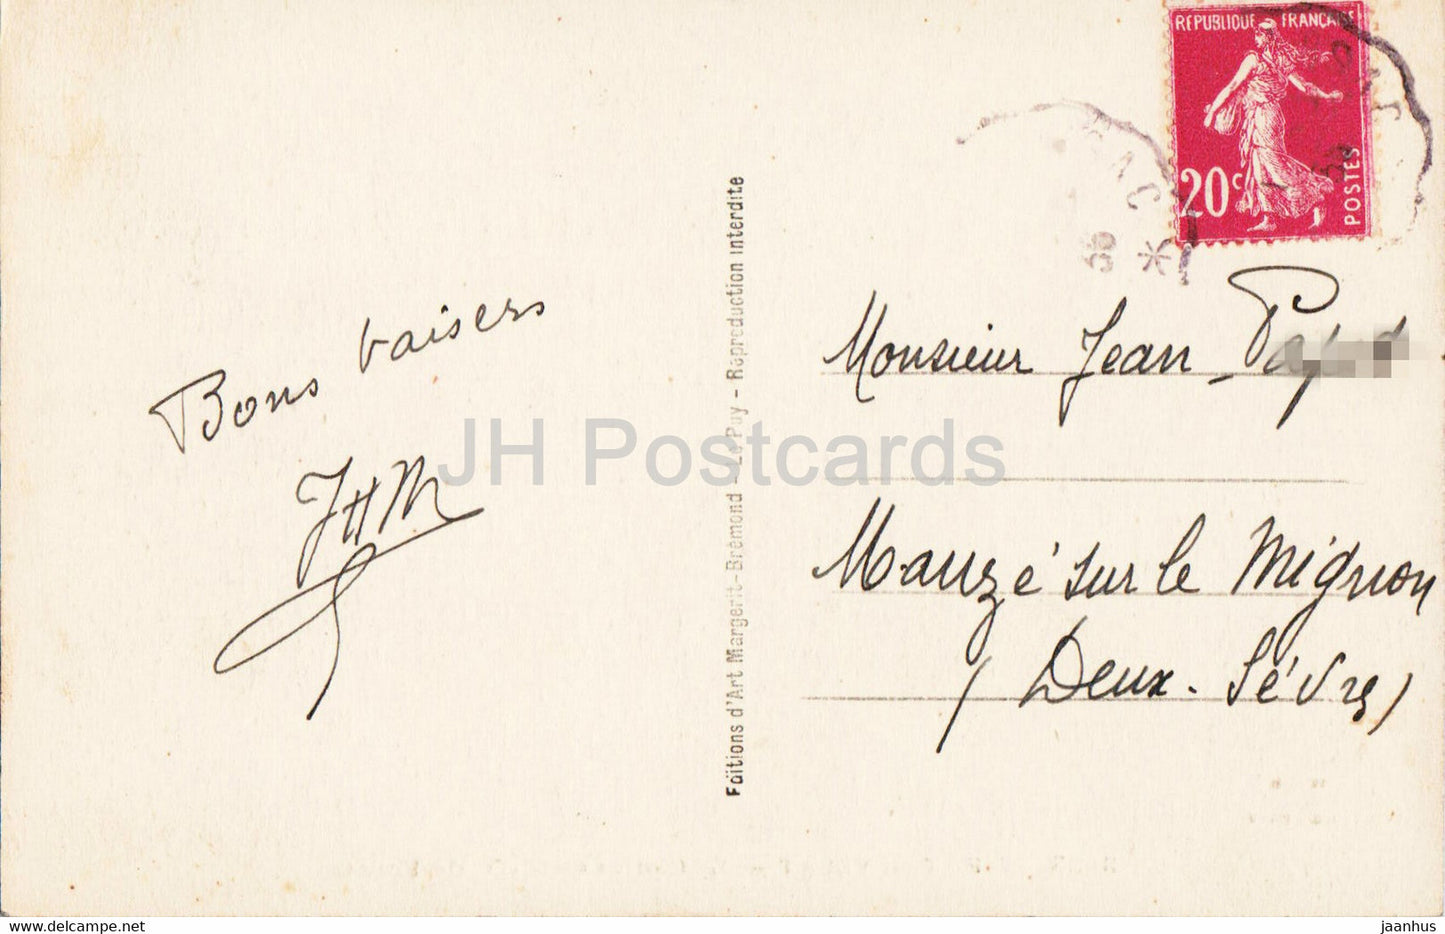 Le Puy en Velay - Le Cloitre et N D de France - 3025 - old postcard - 1935 - France - used